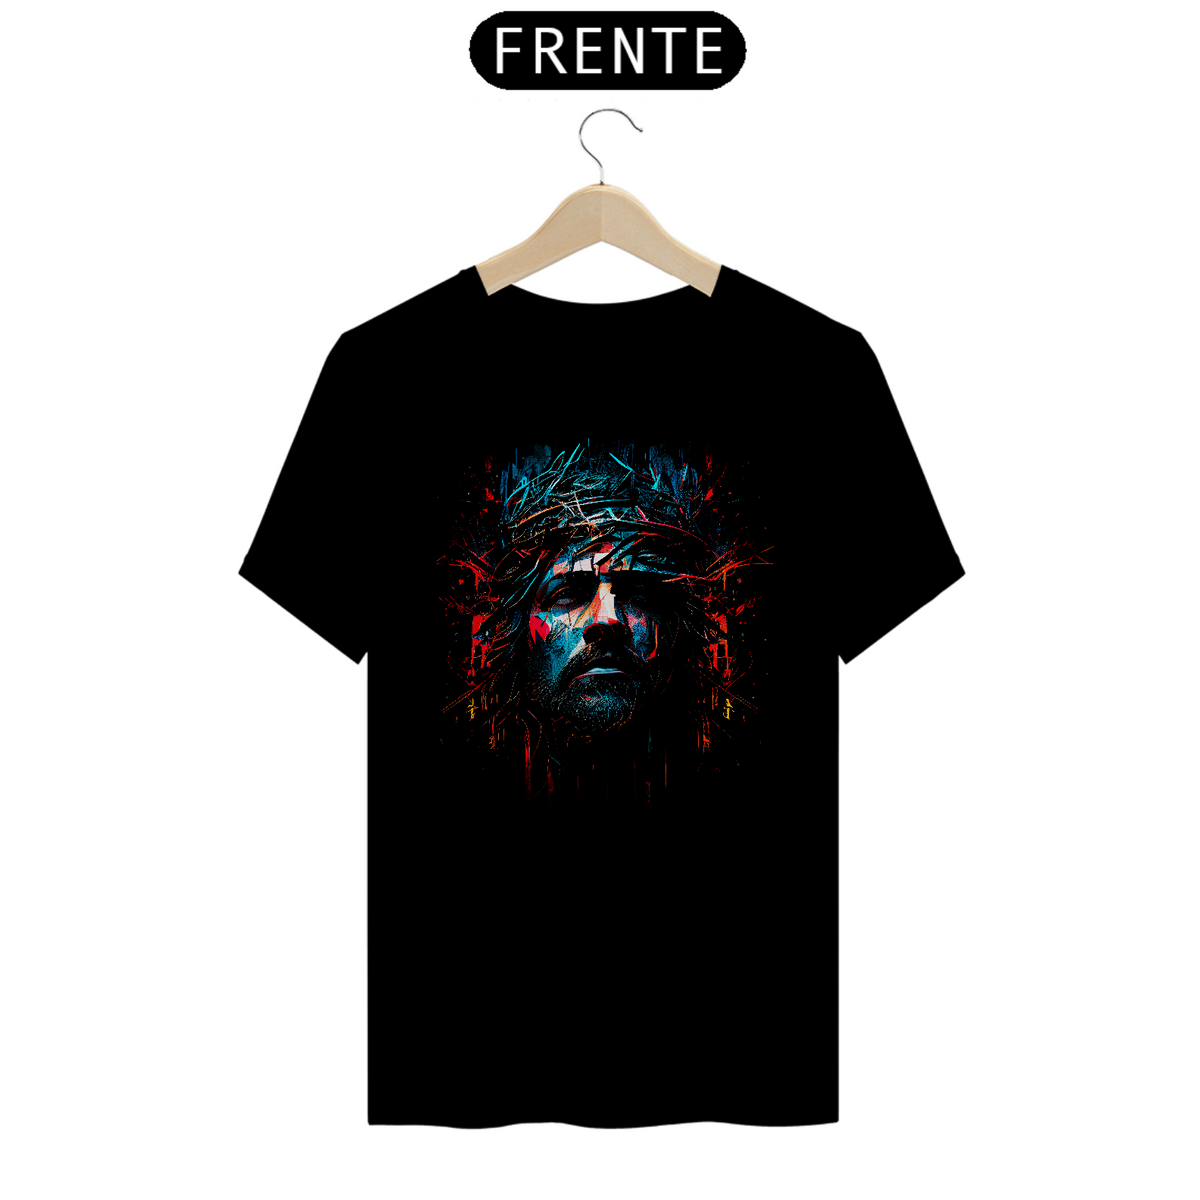 Nome do produto: Camisa - Jesus Cristo - Camiseta - Unissex - Premium (Cor Preta)